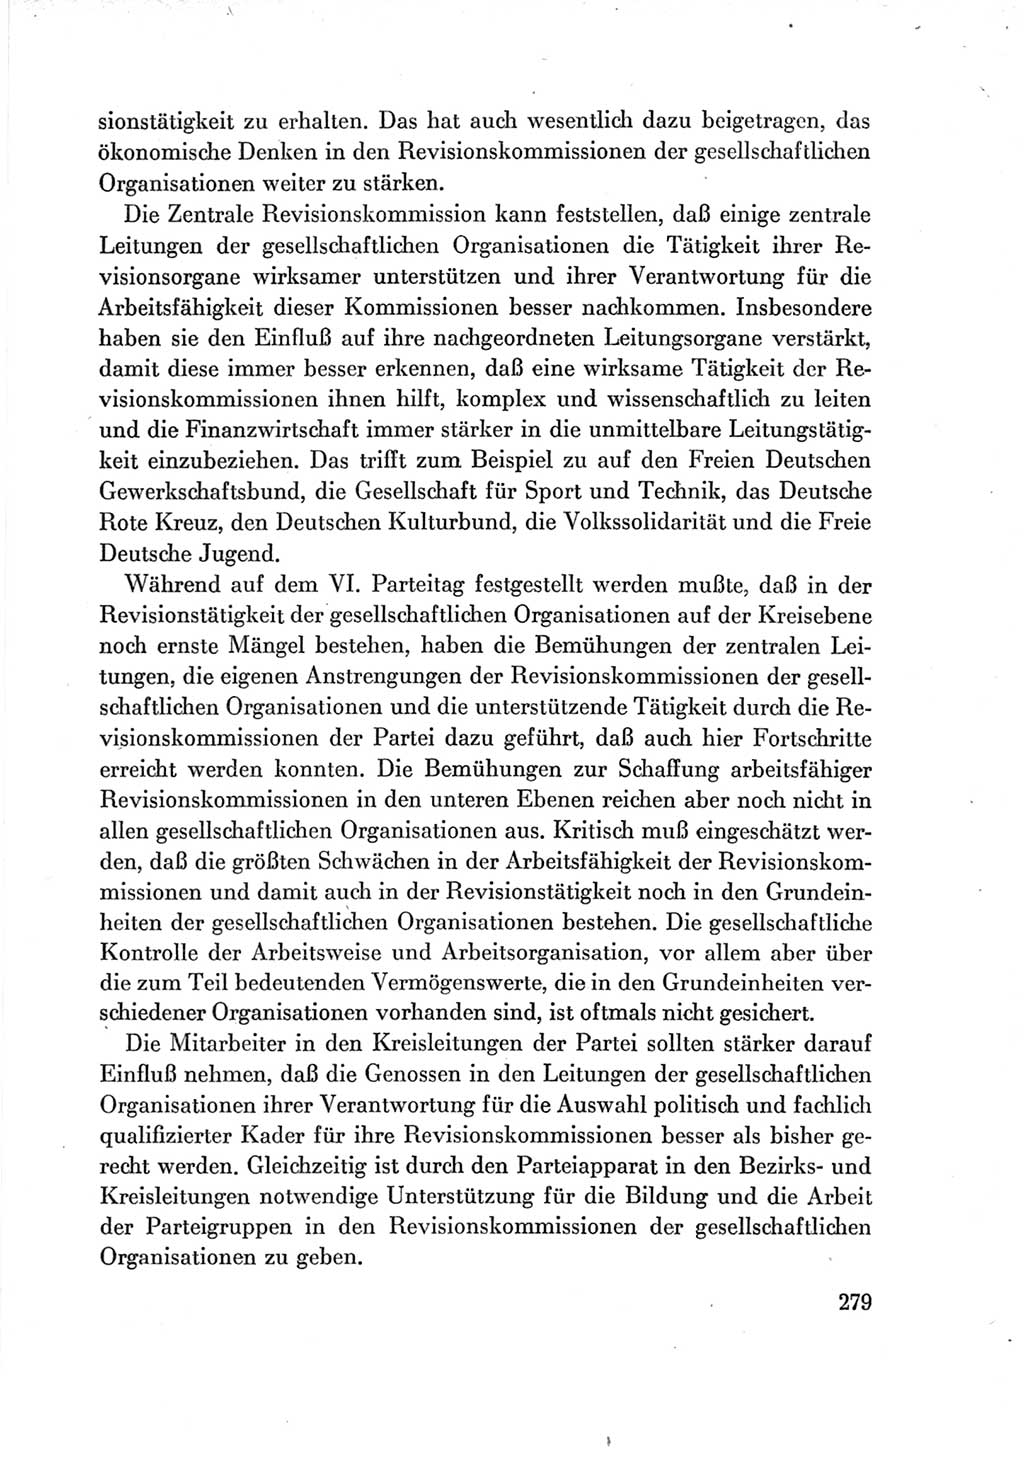 Protokoll der Verhandlungen des Ⅶ. Parteitages der Sozialistischen Einheitspartei Deutschlands (SED) [Deutsche Demokratische Republik (DDR)] 1967, Band Ⅳ, Seite 279 (Prot. Verh. Ⅶ. PT SED DDR 1967, Bd. Ⅳ, S. 279)